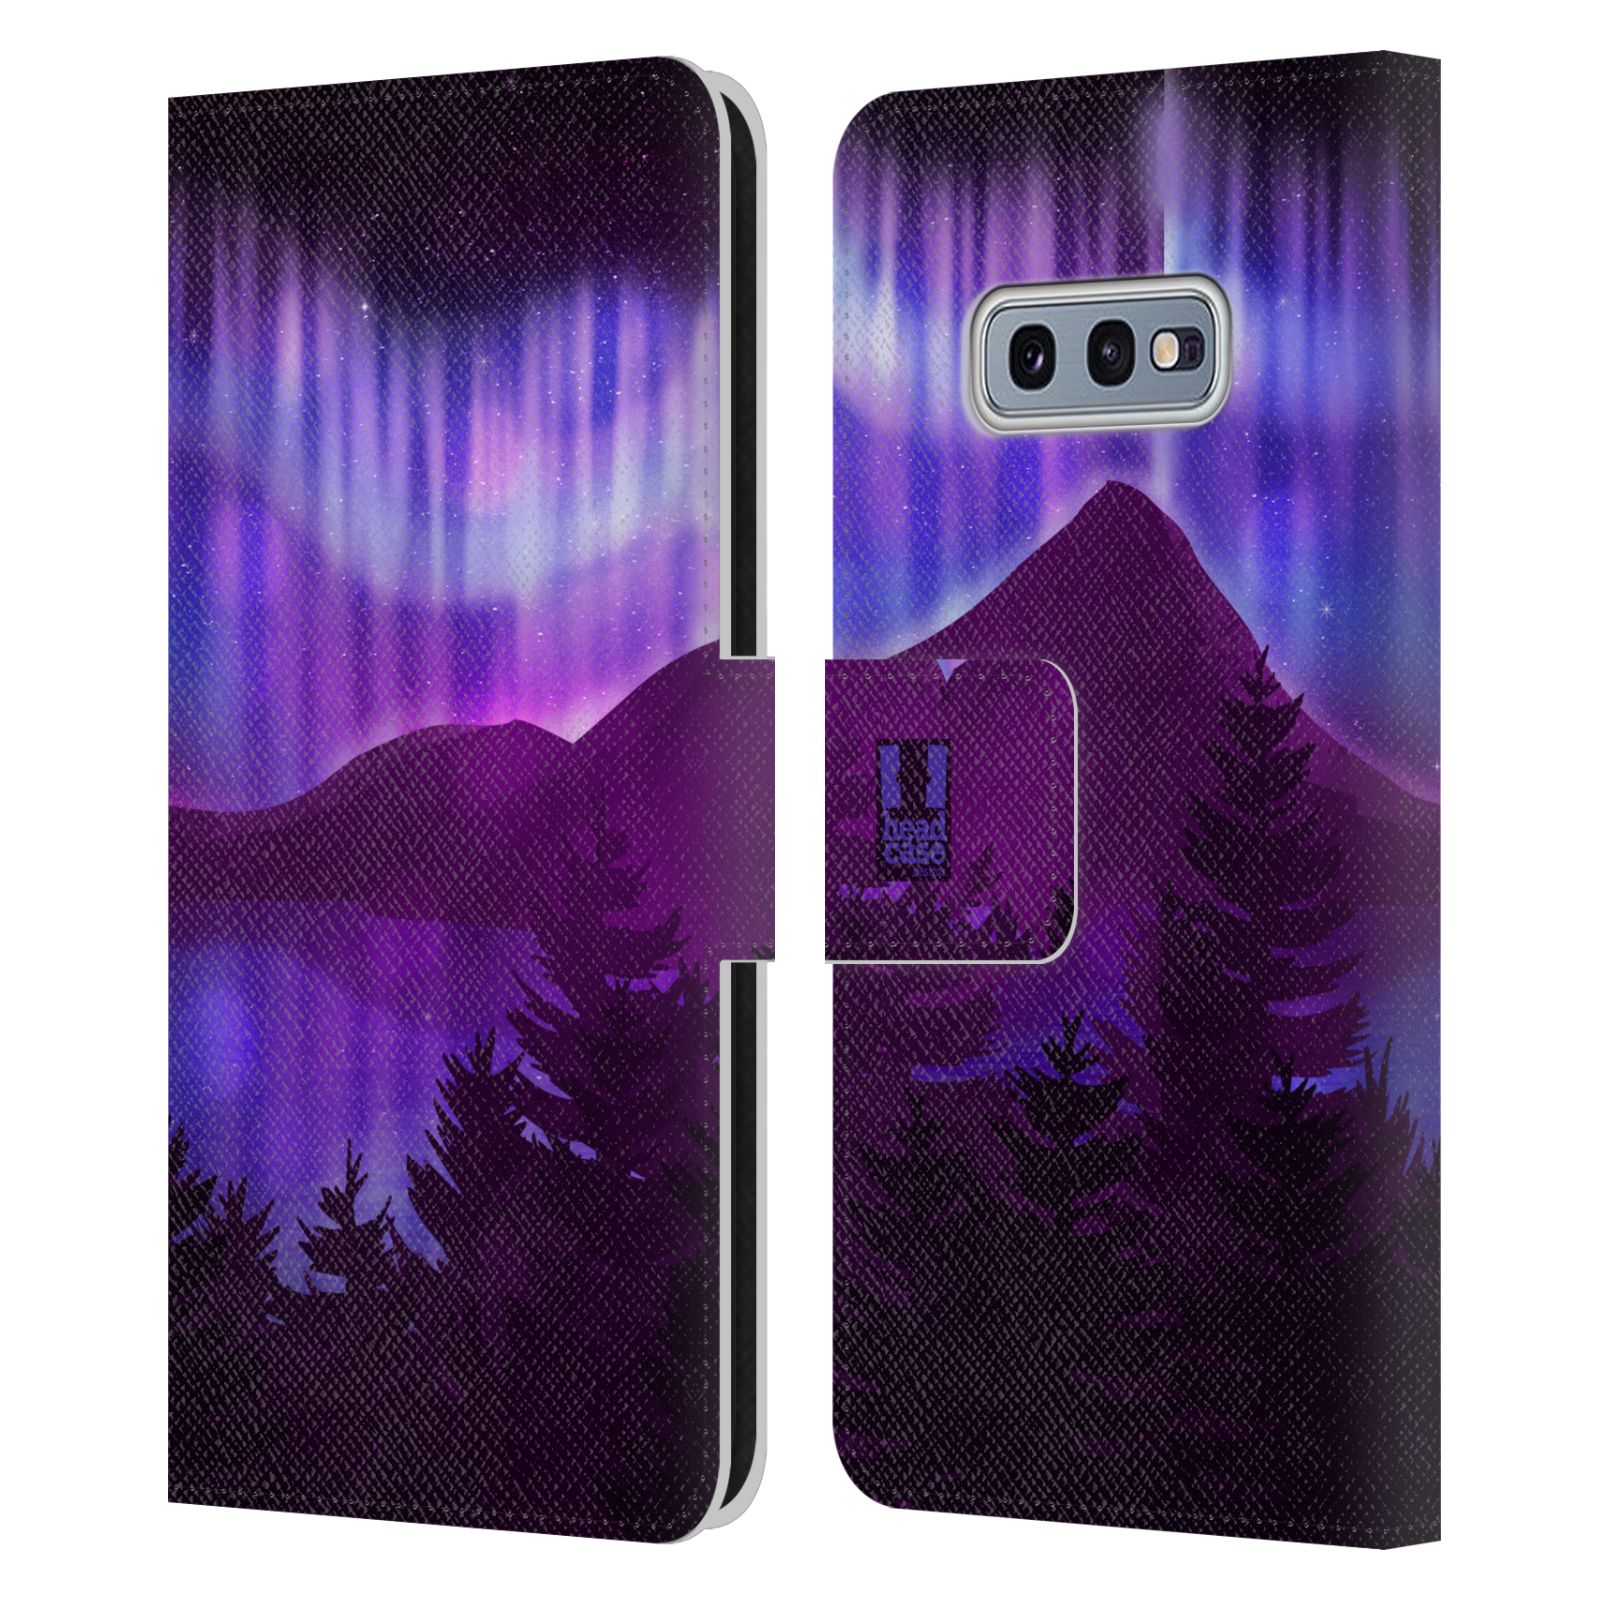 Pouzdro na mobil Samsung Galaxy S10e  - HEAD CASE - Hory a lesy fialový odstín